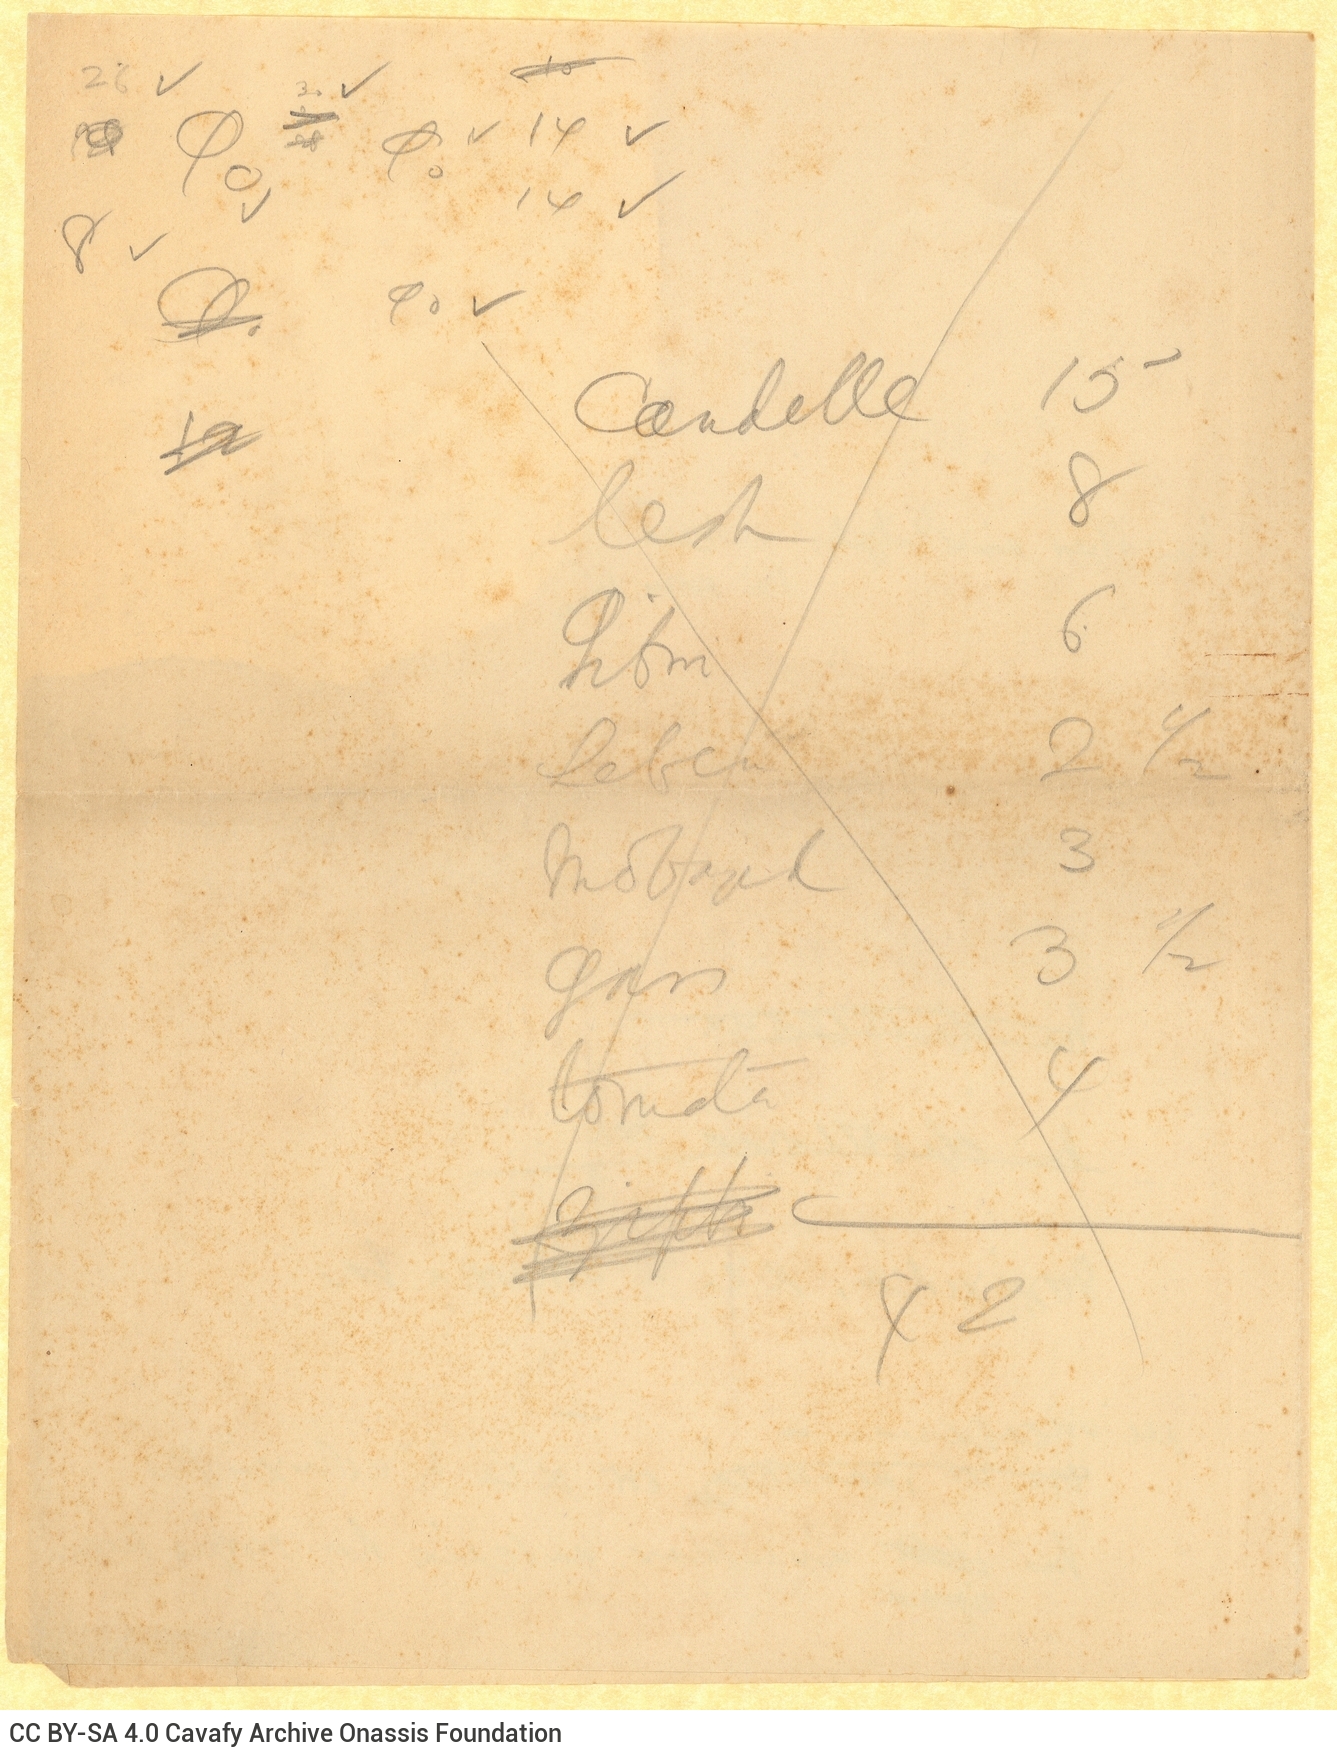 Χειρόγραφες σημειώσεις σε φύλλο χαρτιού, από το οποίο λείπει περίπ